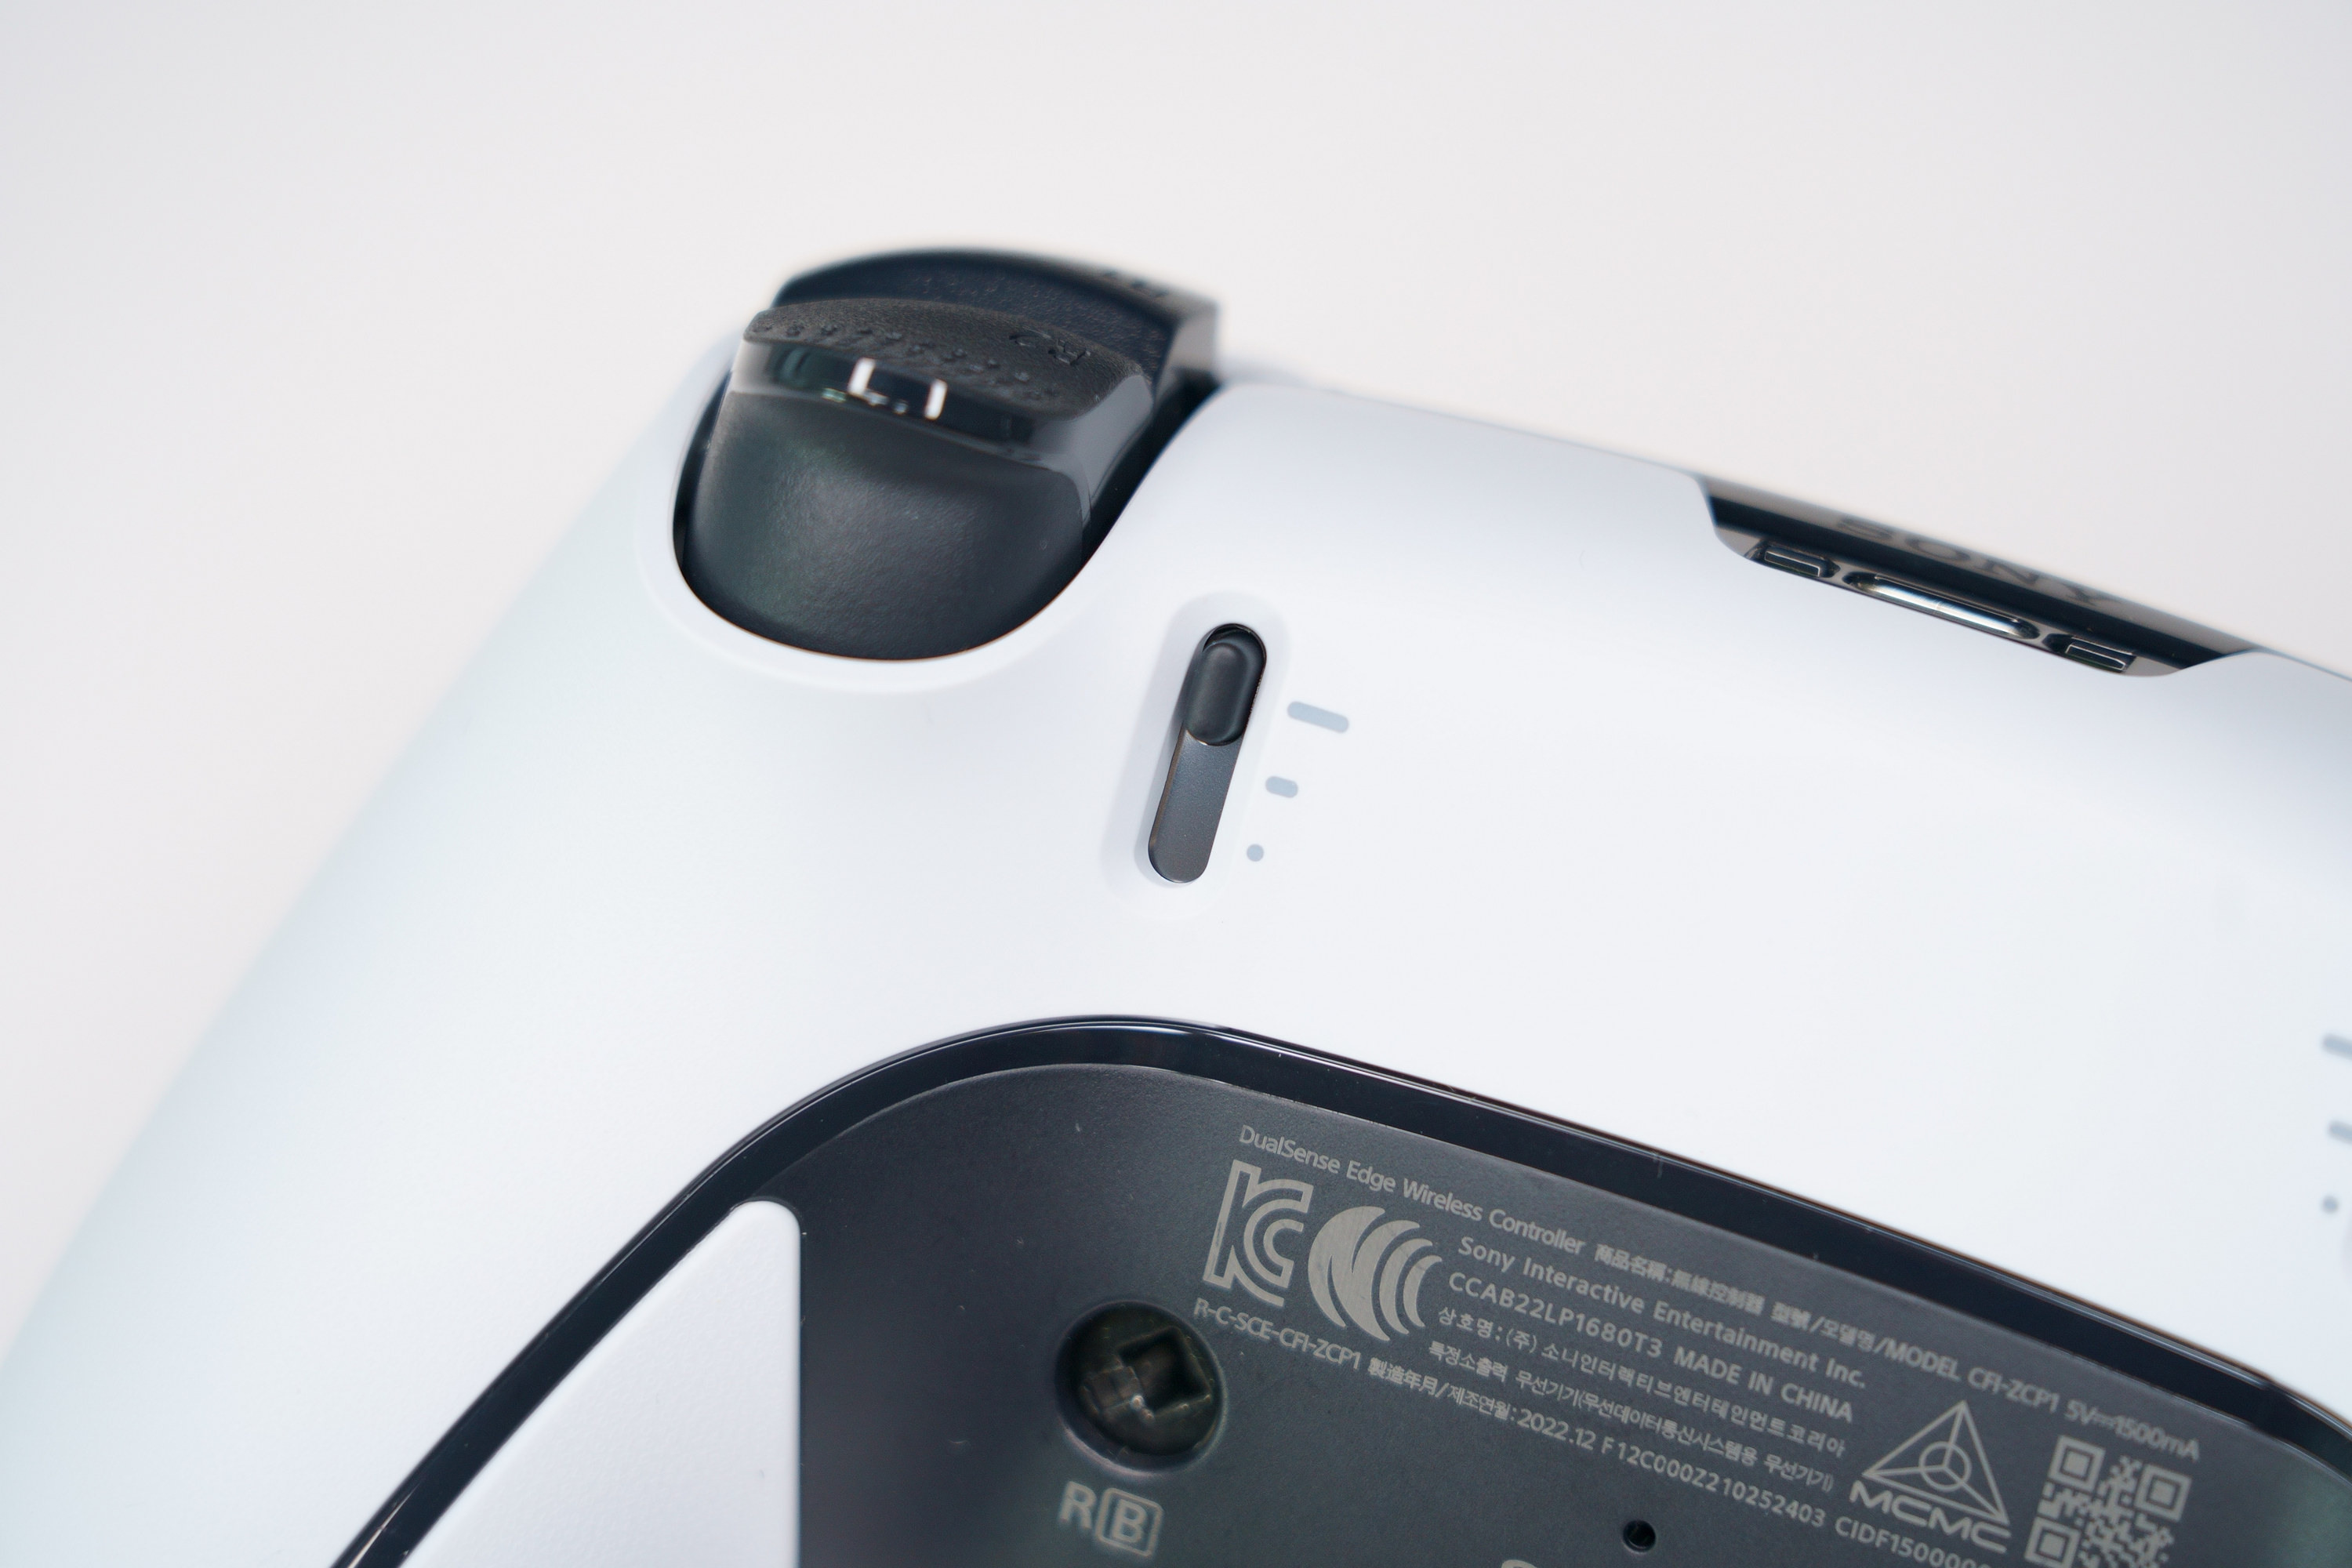 PS5 DualSense Edge 高效能控制器一手开箱 丰富自订功能满足各类型玩家需求插图32